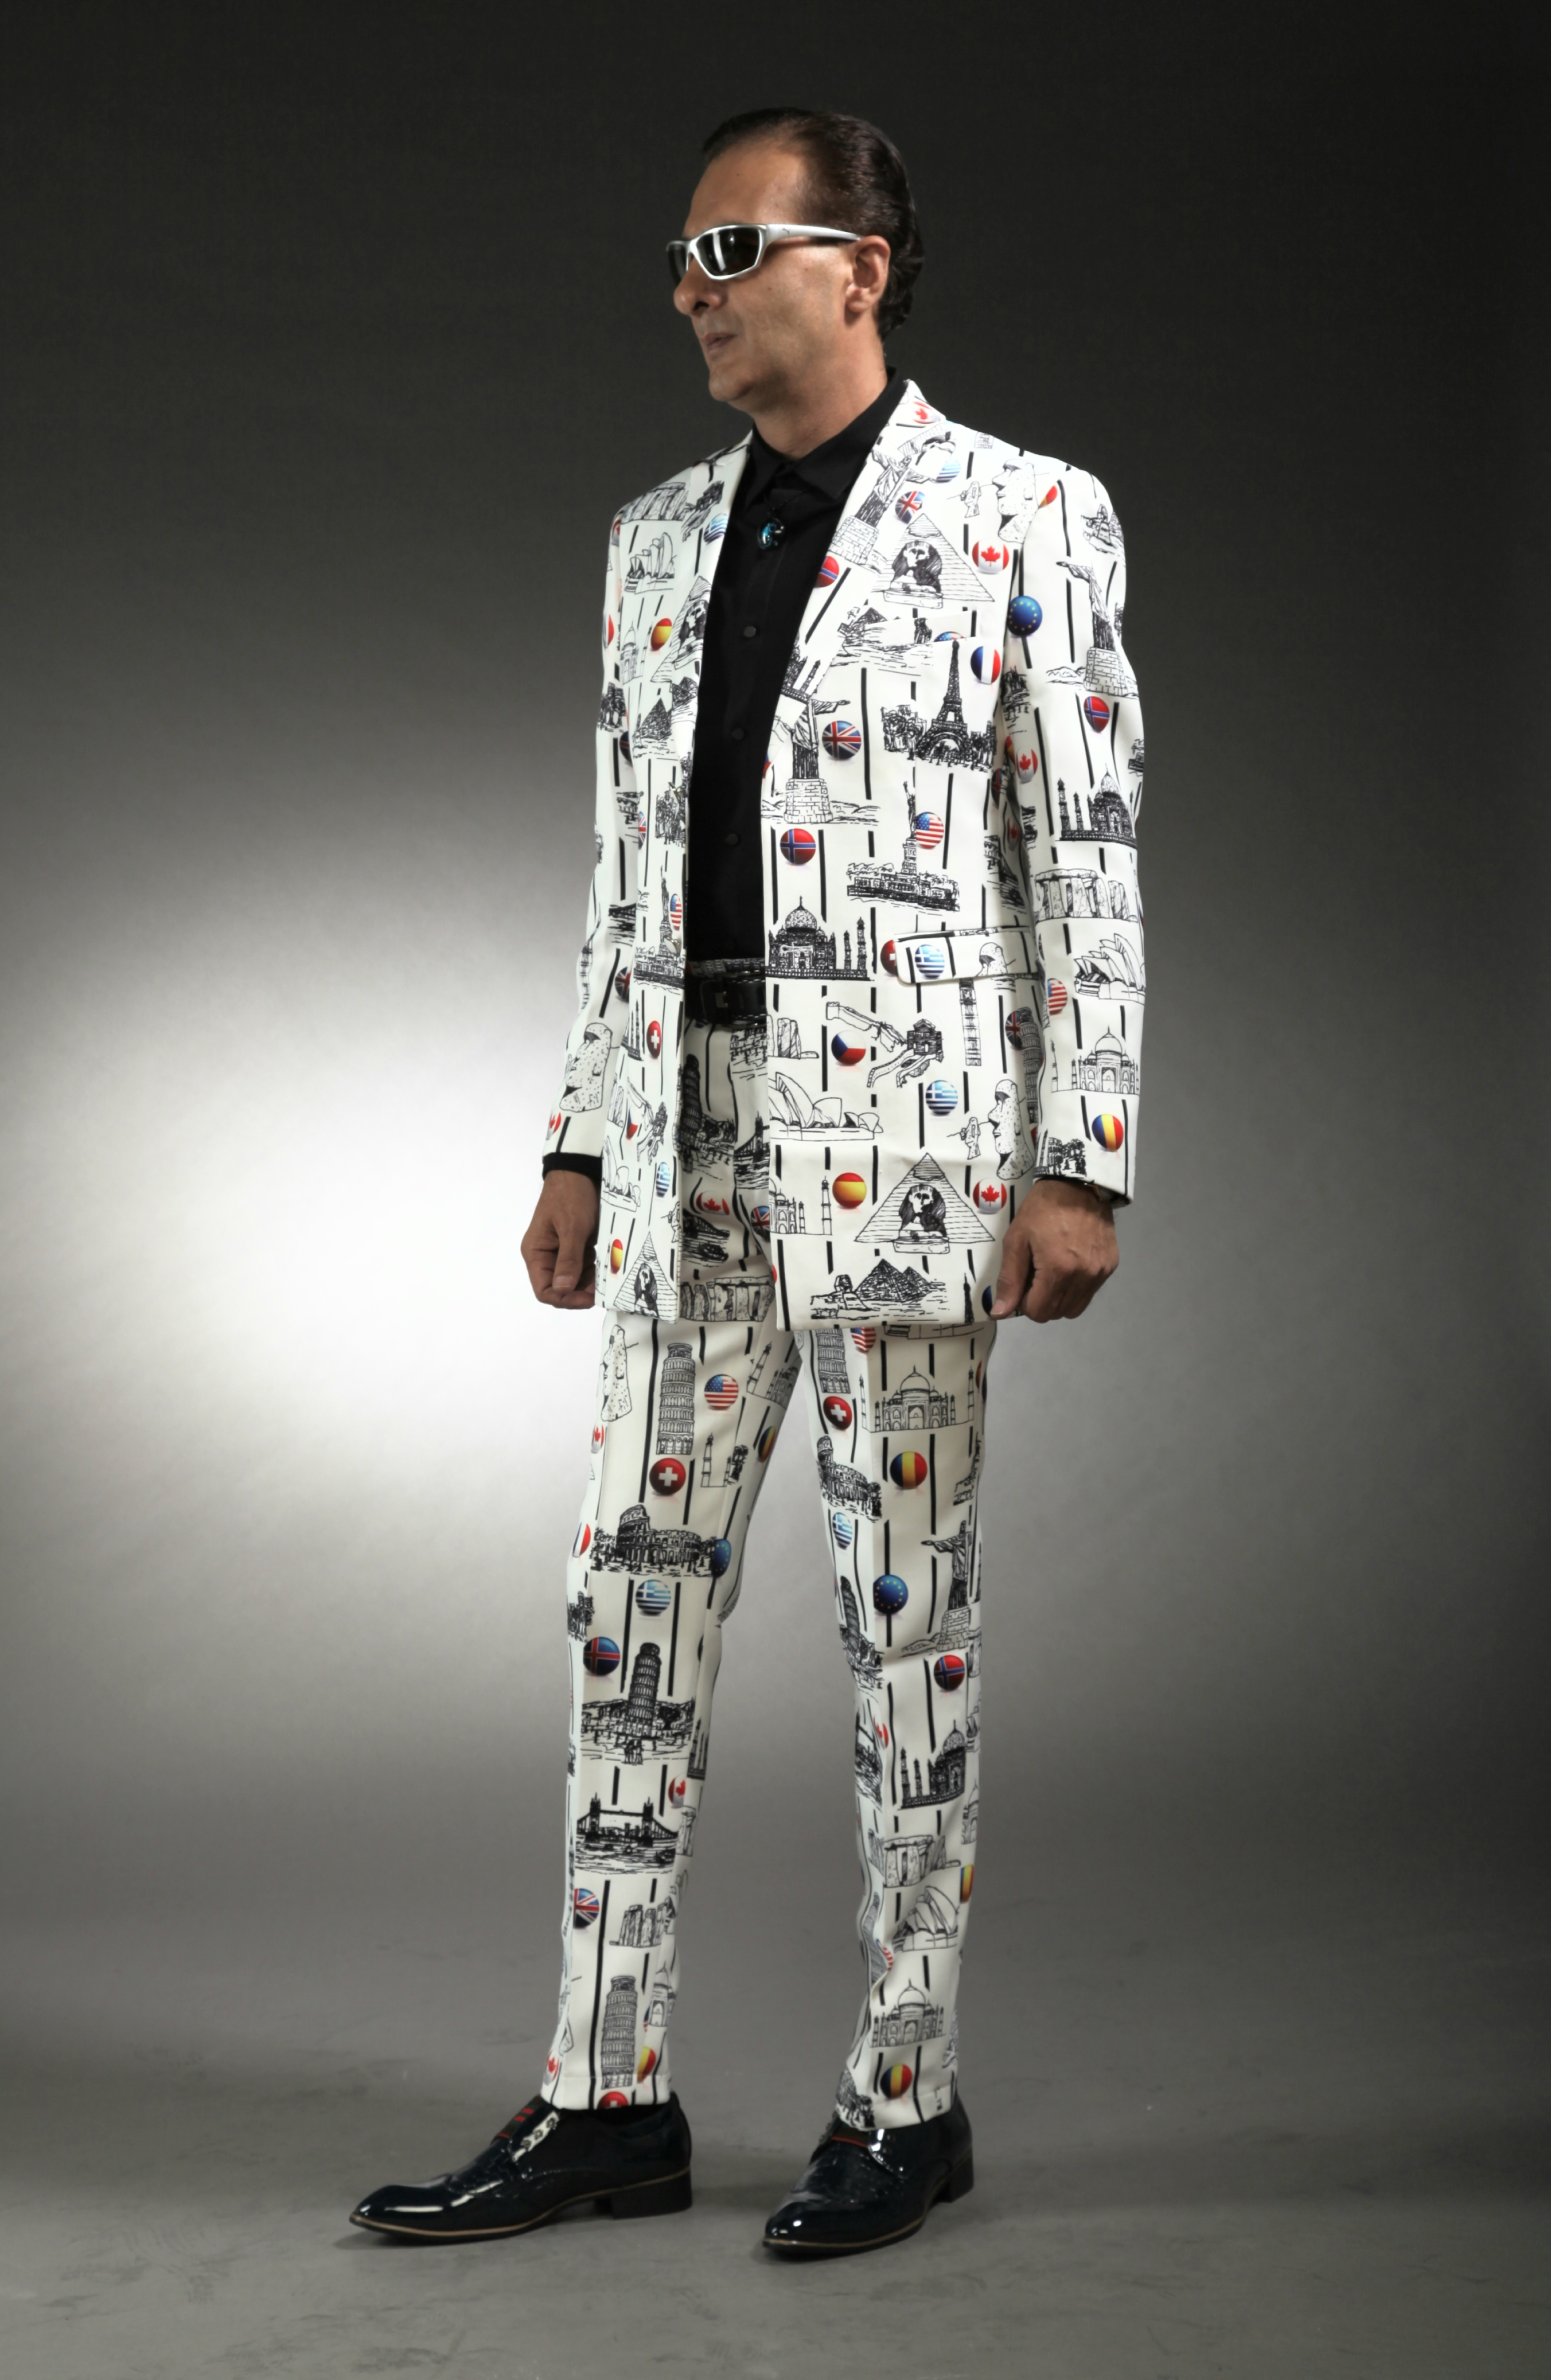 0511A-tailor_tailors_bespoke_tailoring_tuxedo_tux_wedding_black_tie_suit_suits_singapore_business